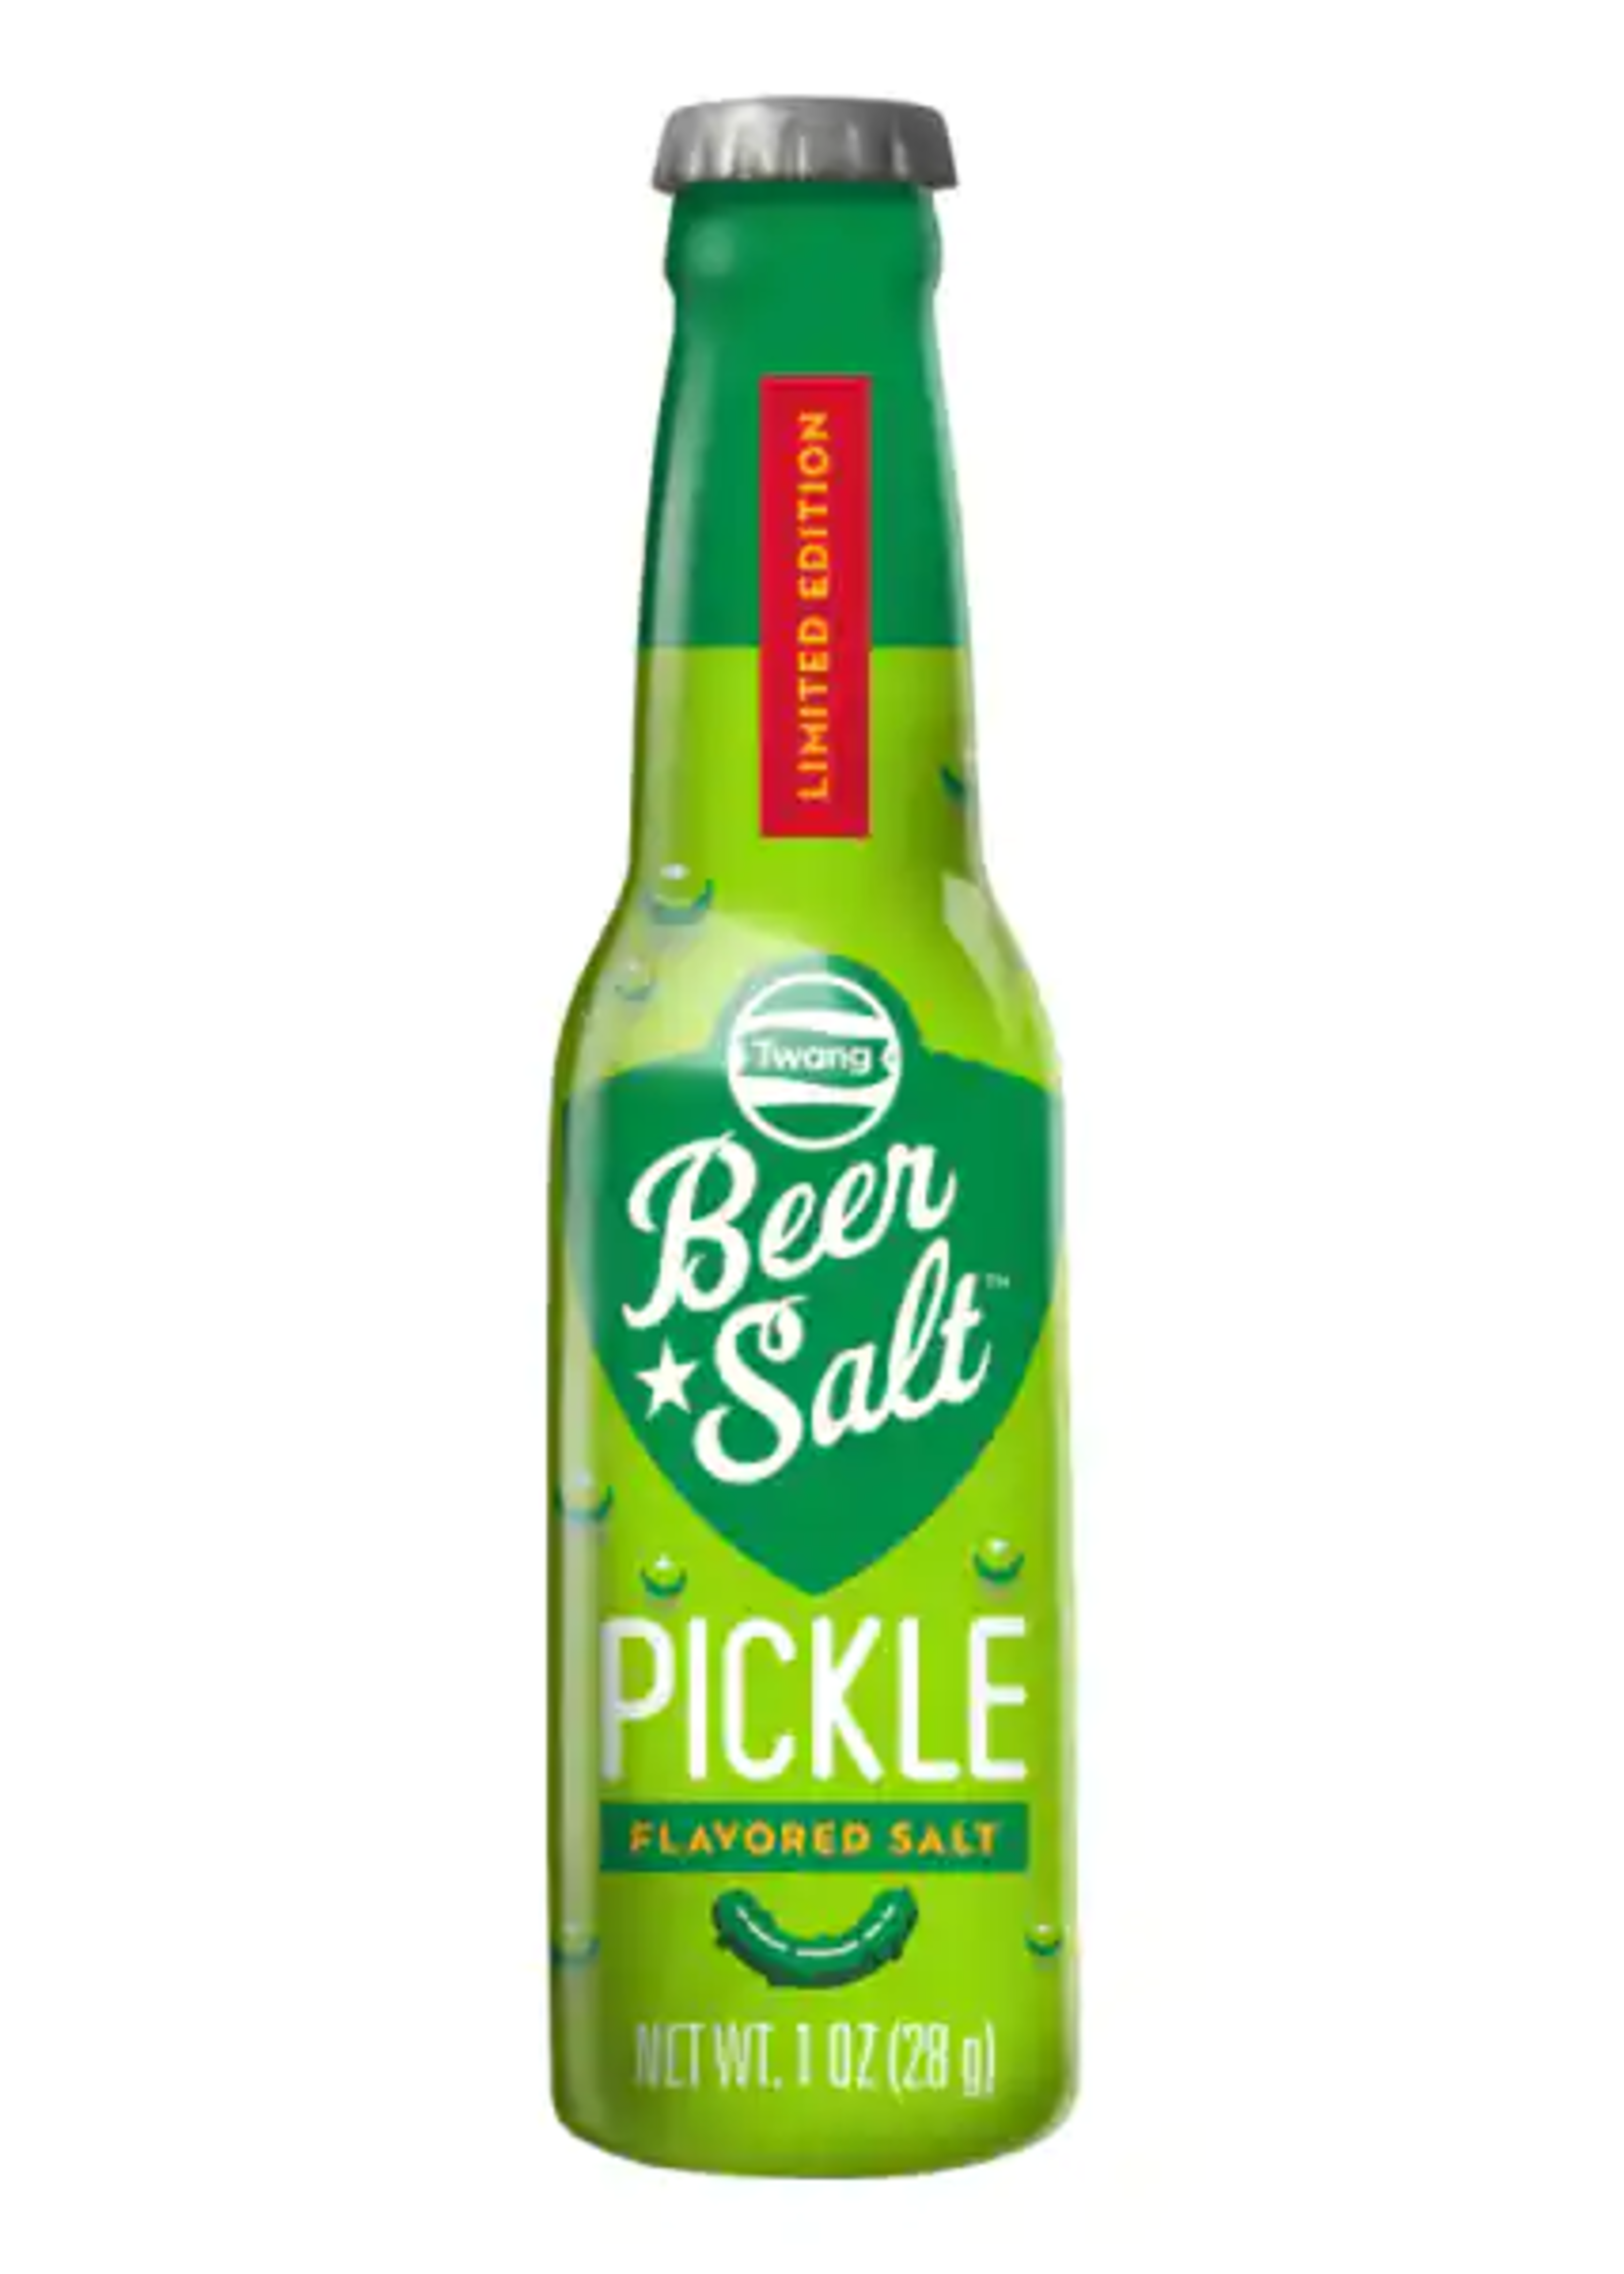 Twang Beer Salt Pickle 1ct